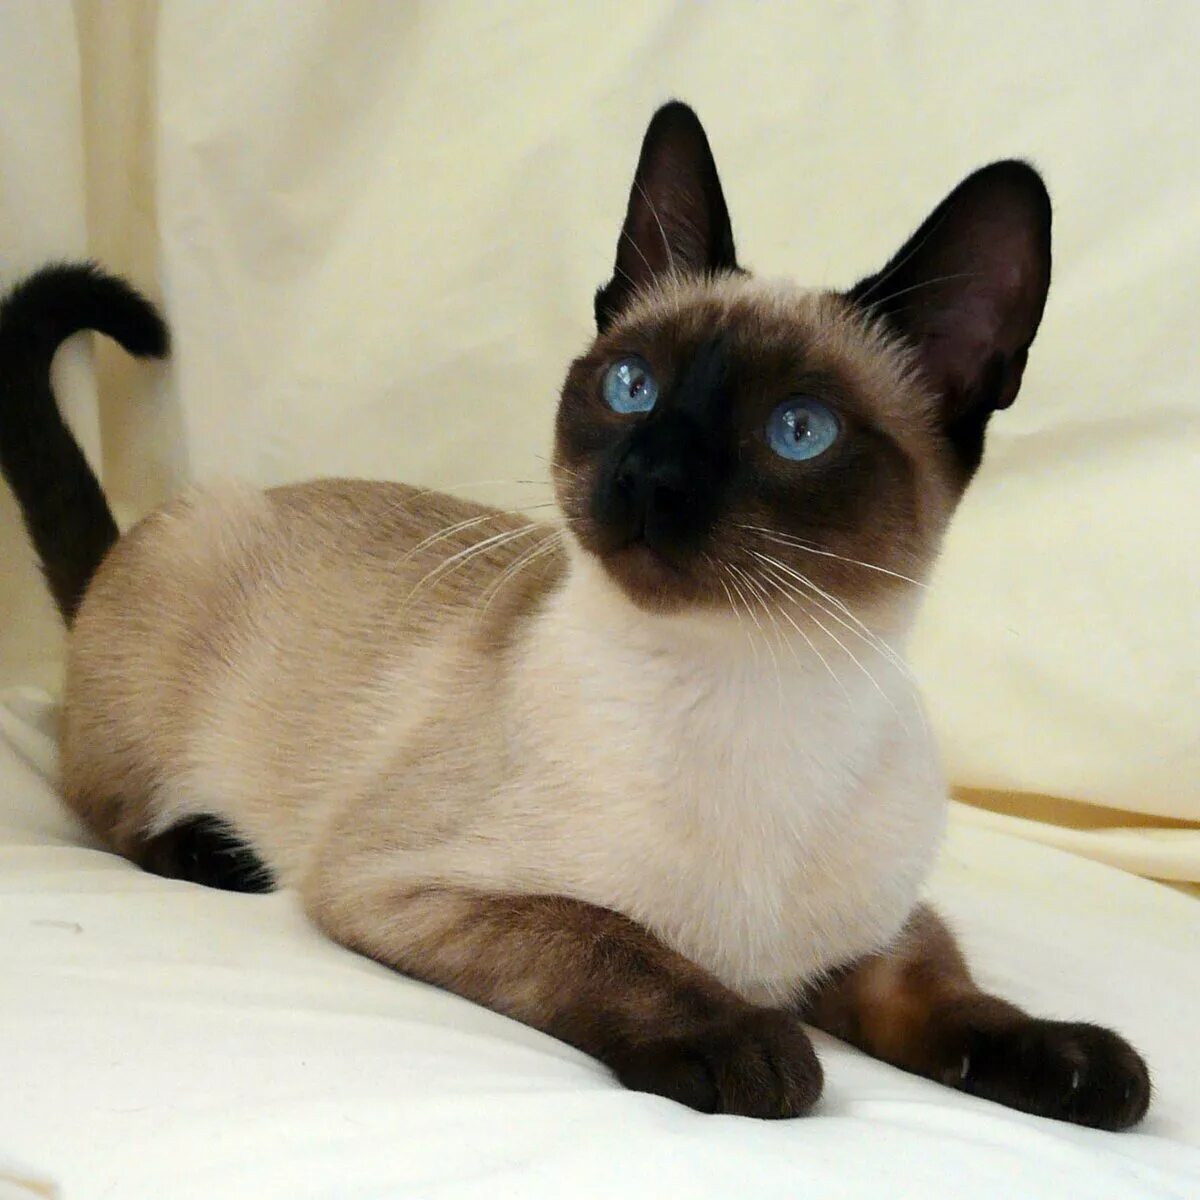 Фотографии кошек породы сиамских кошек. Тайская кошка Сноу Шу. Сиамская кошка. Кот сиамской породы. Сноу Шу Блю Пойнт.